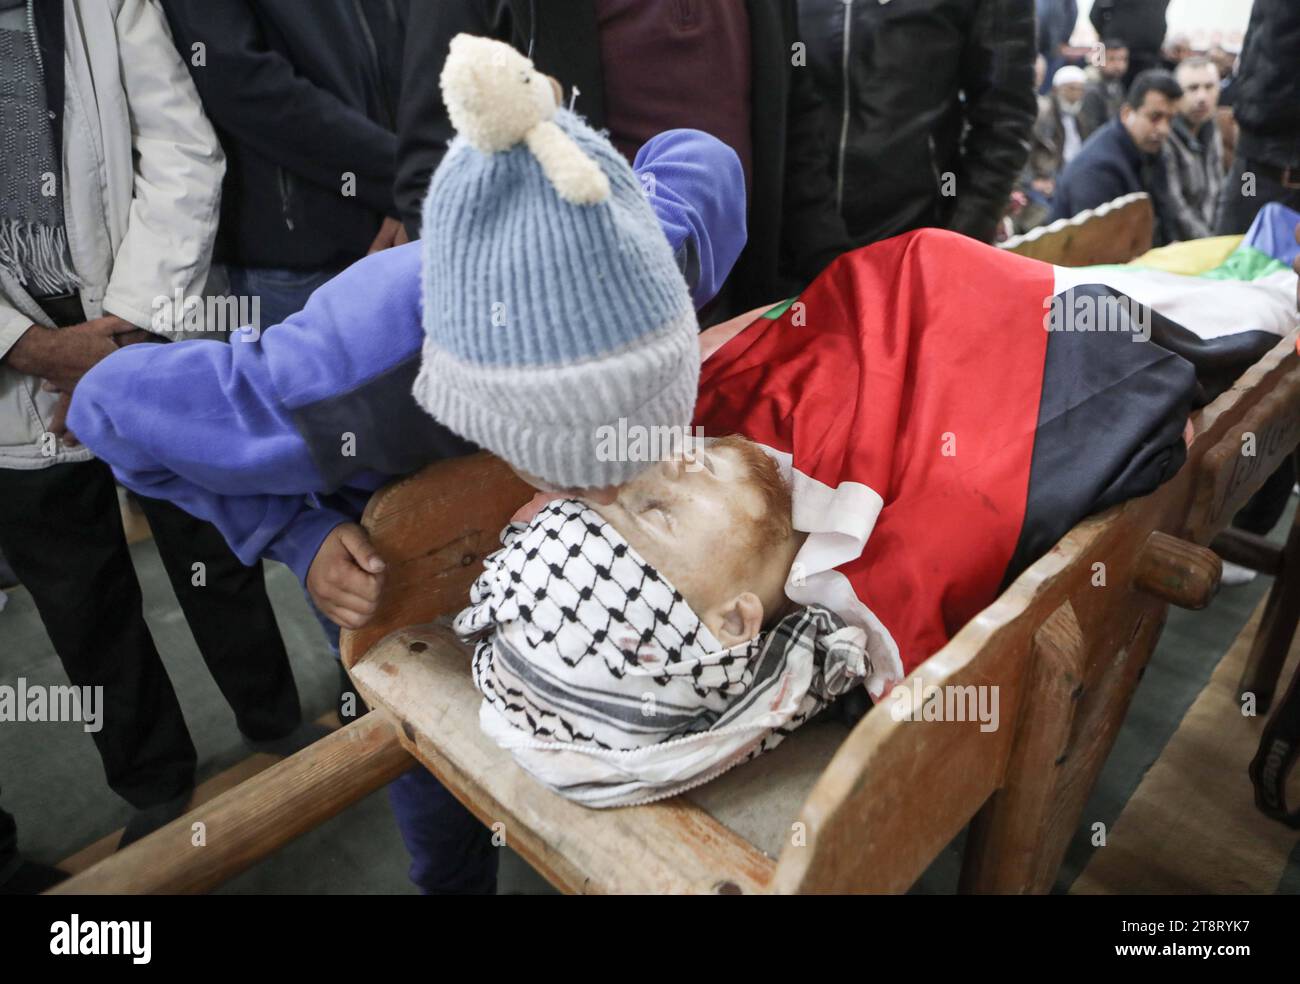 NOTA DE LOS EDITORES: CONTENIDO GRÁFICO. Los dolientes llevan el cadáver del palestino de 21 años Muhammad Adel al-Saraheen, presuntamente asesinado por las fuerzas israelíes. Los dolientes llevan el cadáver del palestino de 21 años Muhammad Adel al-Saraheen, presuntamente asesinado por las fuerzas israelíes a principios del 20 de noviembre de 2023, durante su funeral en la aldea de Beit Ula, al norte de la ciudad ocupada de Hebrón en Cisjordania, en medio de continuas batallas entre Israel y el grupo militante Hamas. Foto de Mamoun Wazwaz apaimages Hebron Cisjordania Territorio Palestino 201123 Hebron MW 007 Derechos de autor: XapaimagesxMamounxWazwazxxapaimagesx Crédito: Foto de stock